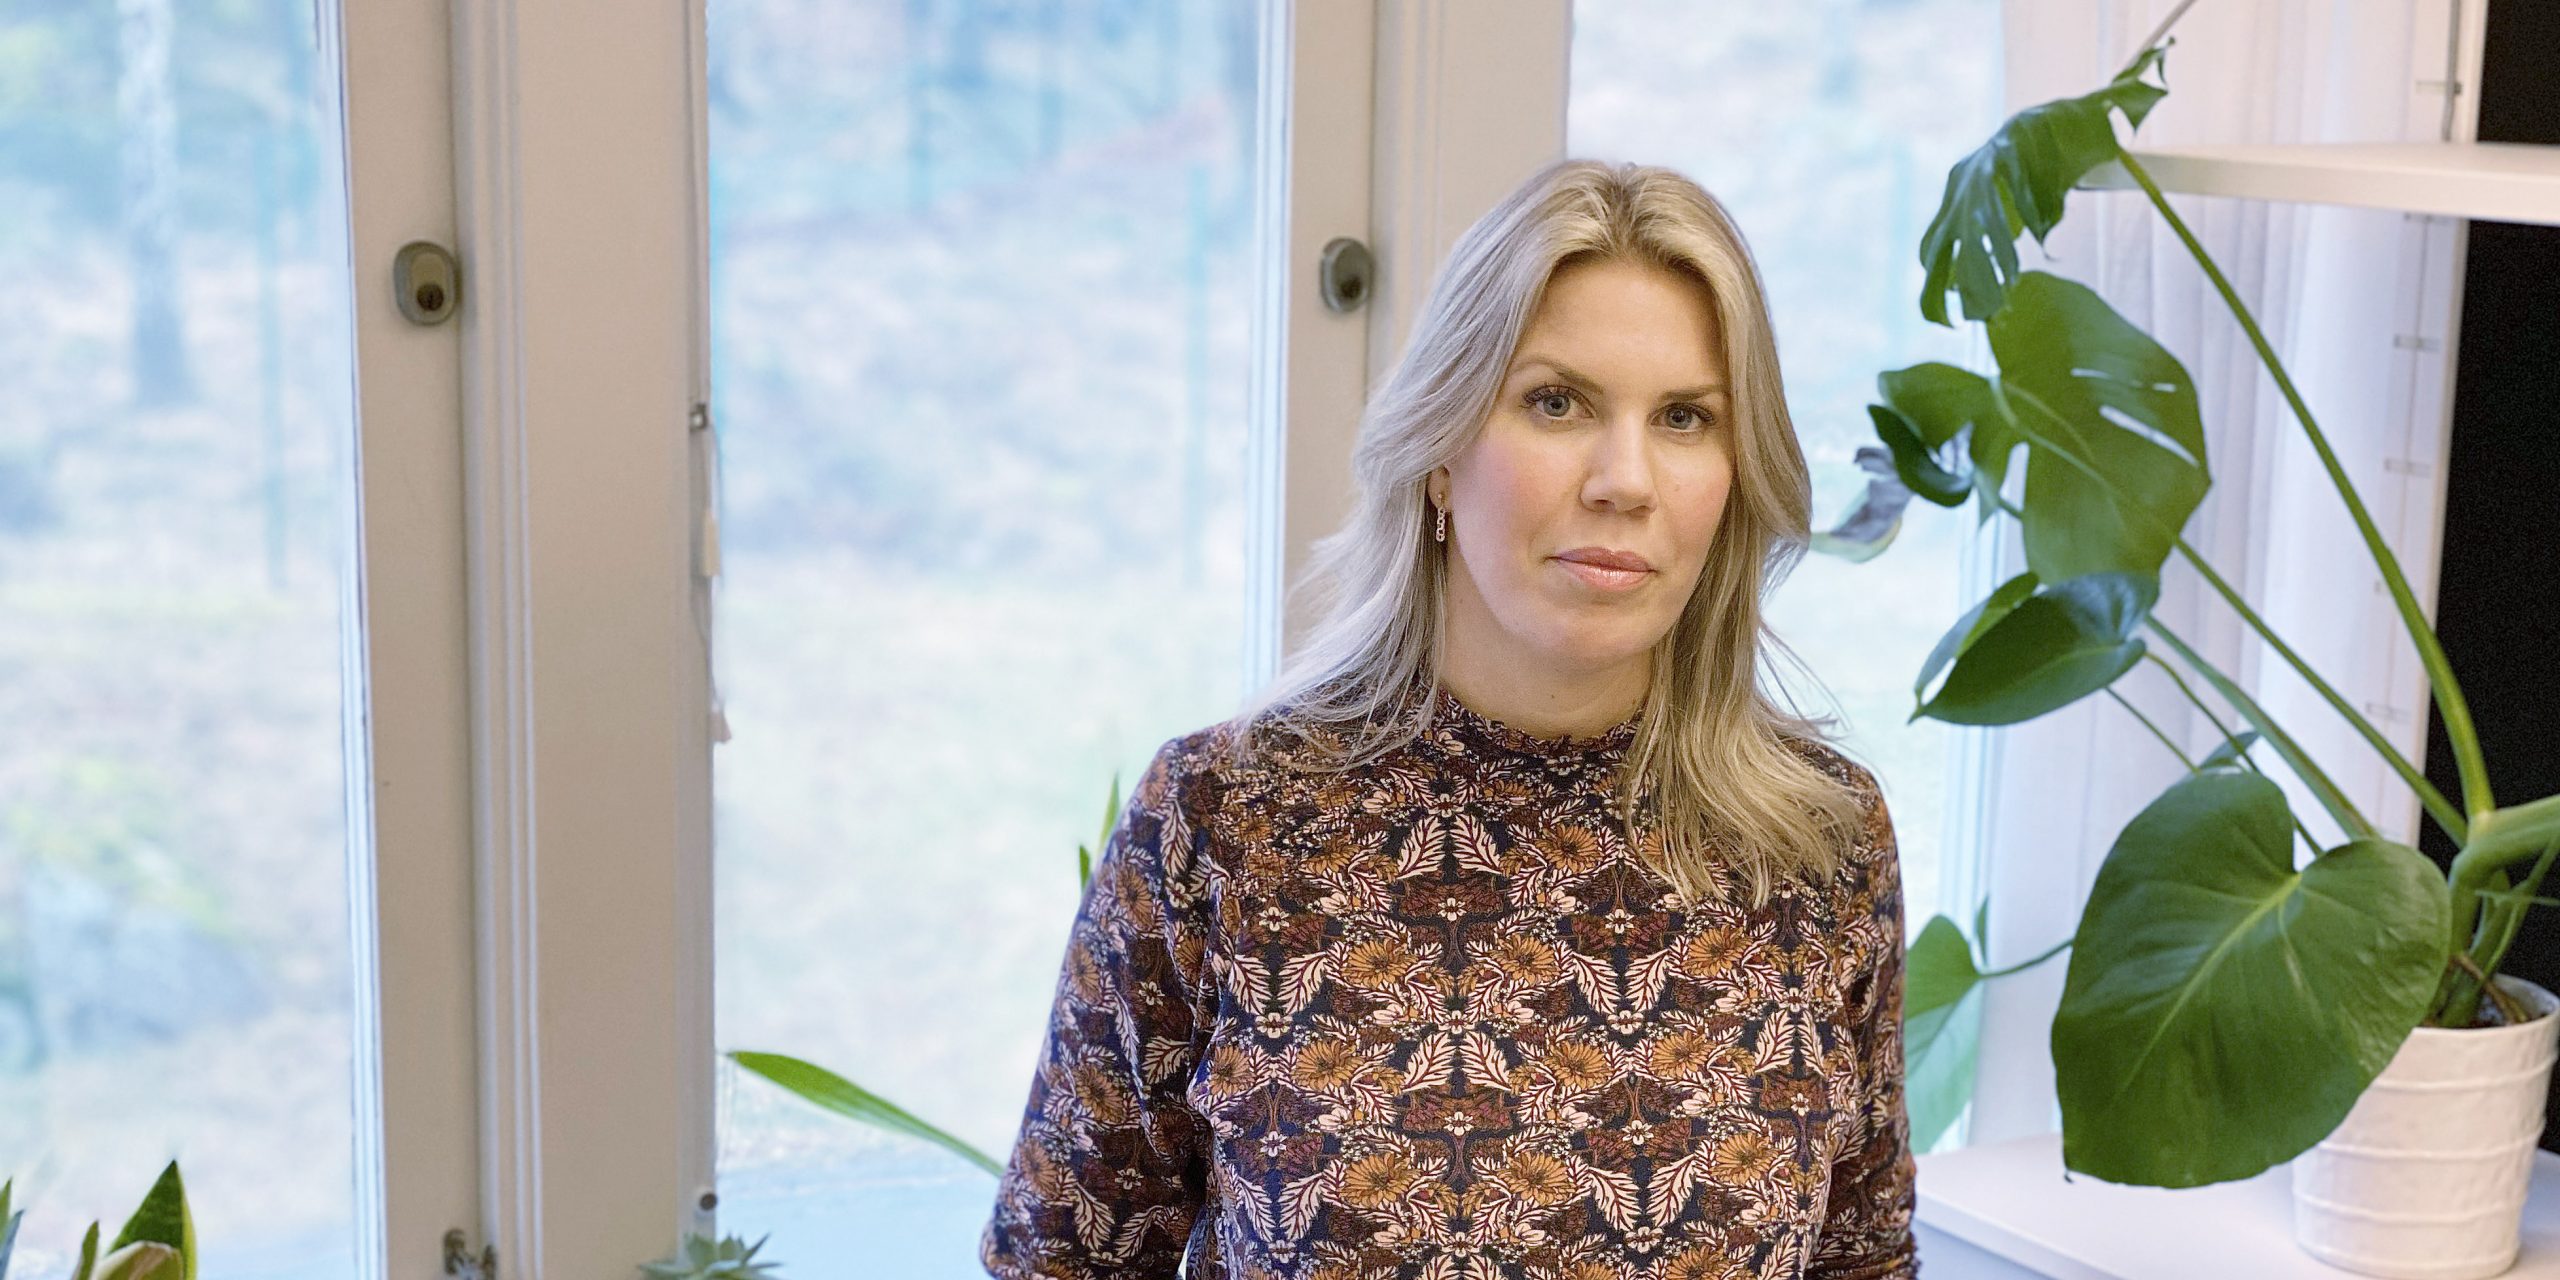 Sara Öster, ST-läkare på rättspsykiatrin i Göteborg